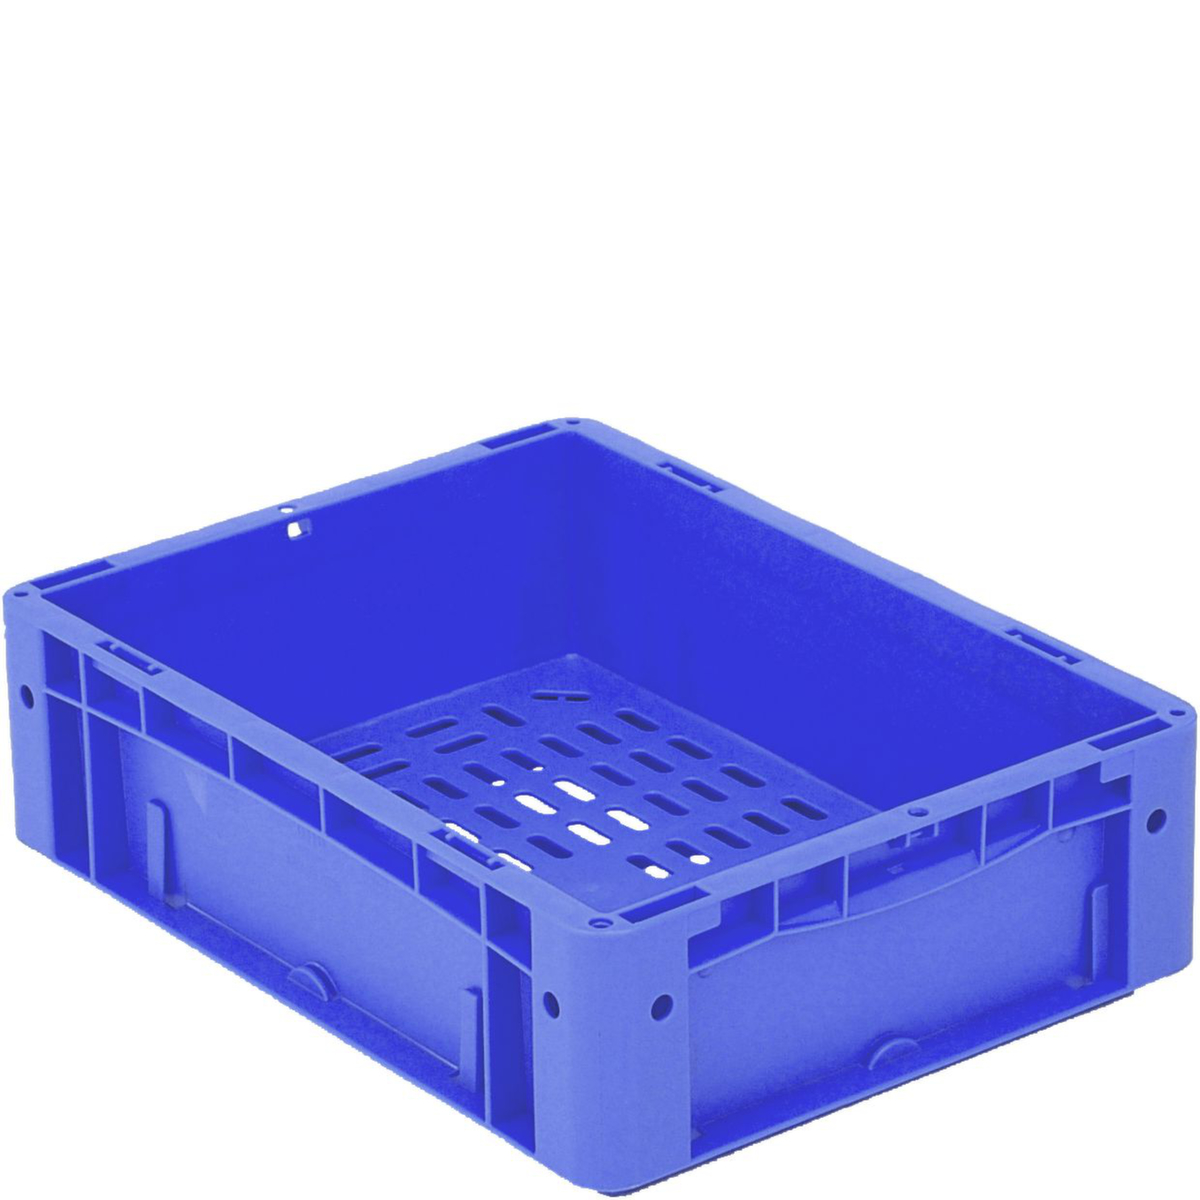 Euronorm empilage Ergonomic base de conteneur Ergonomic perforée, bleu, capacité 9,8 l  ZOOM